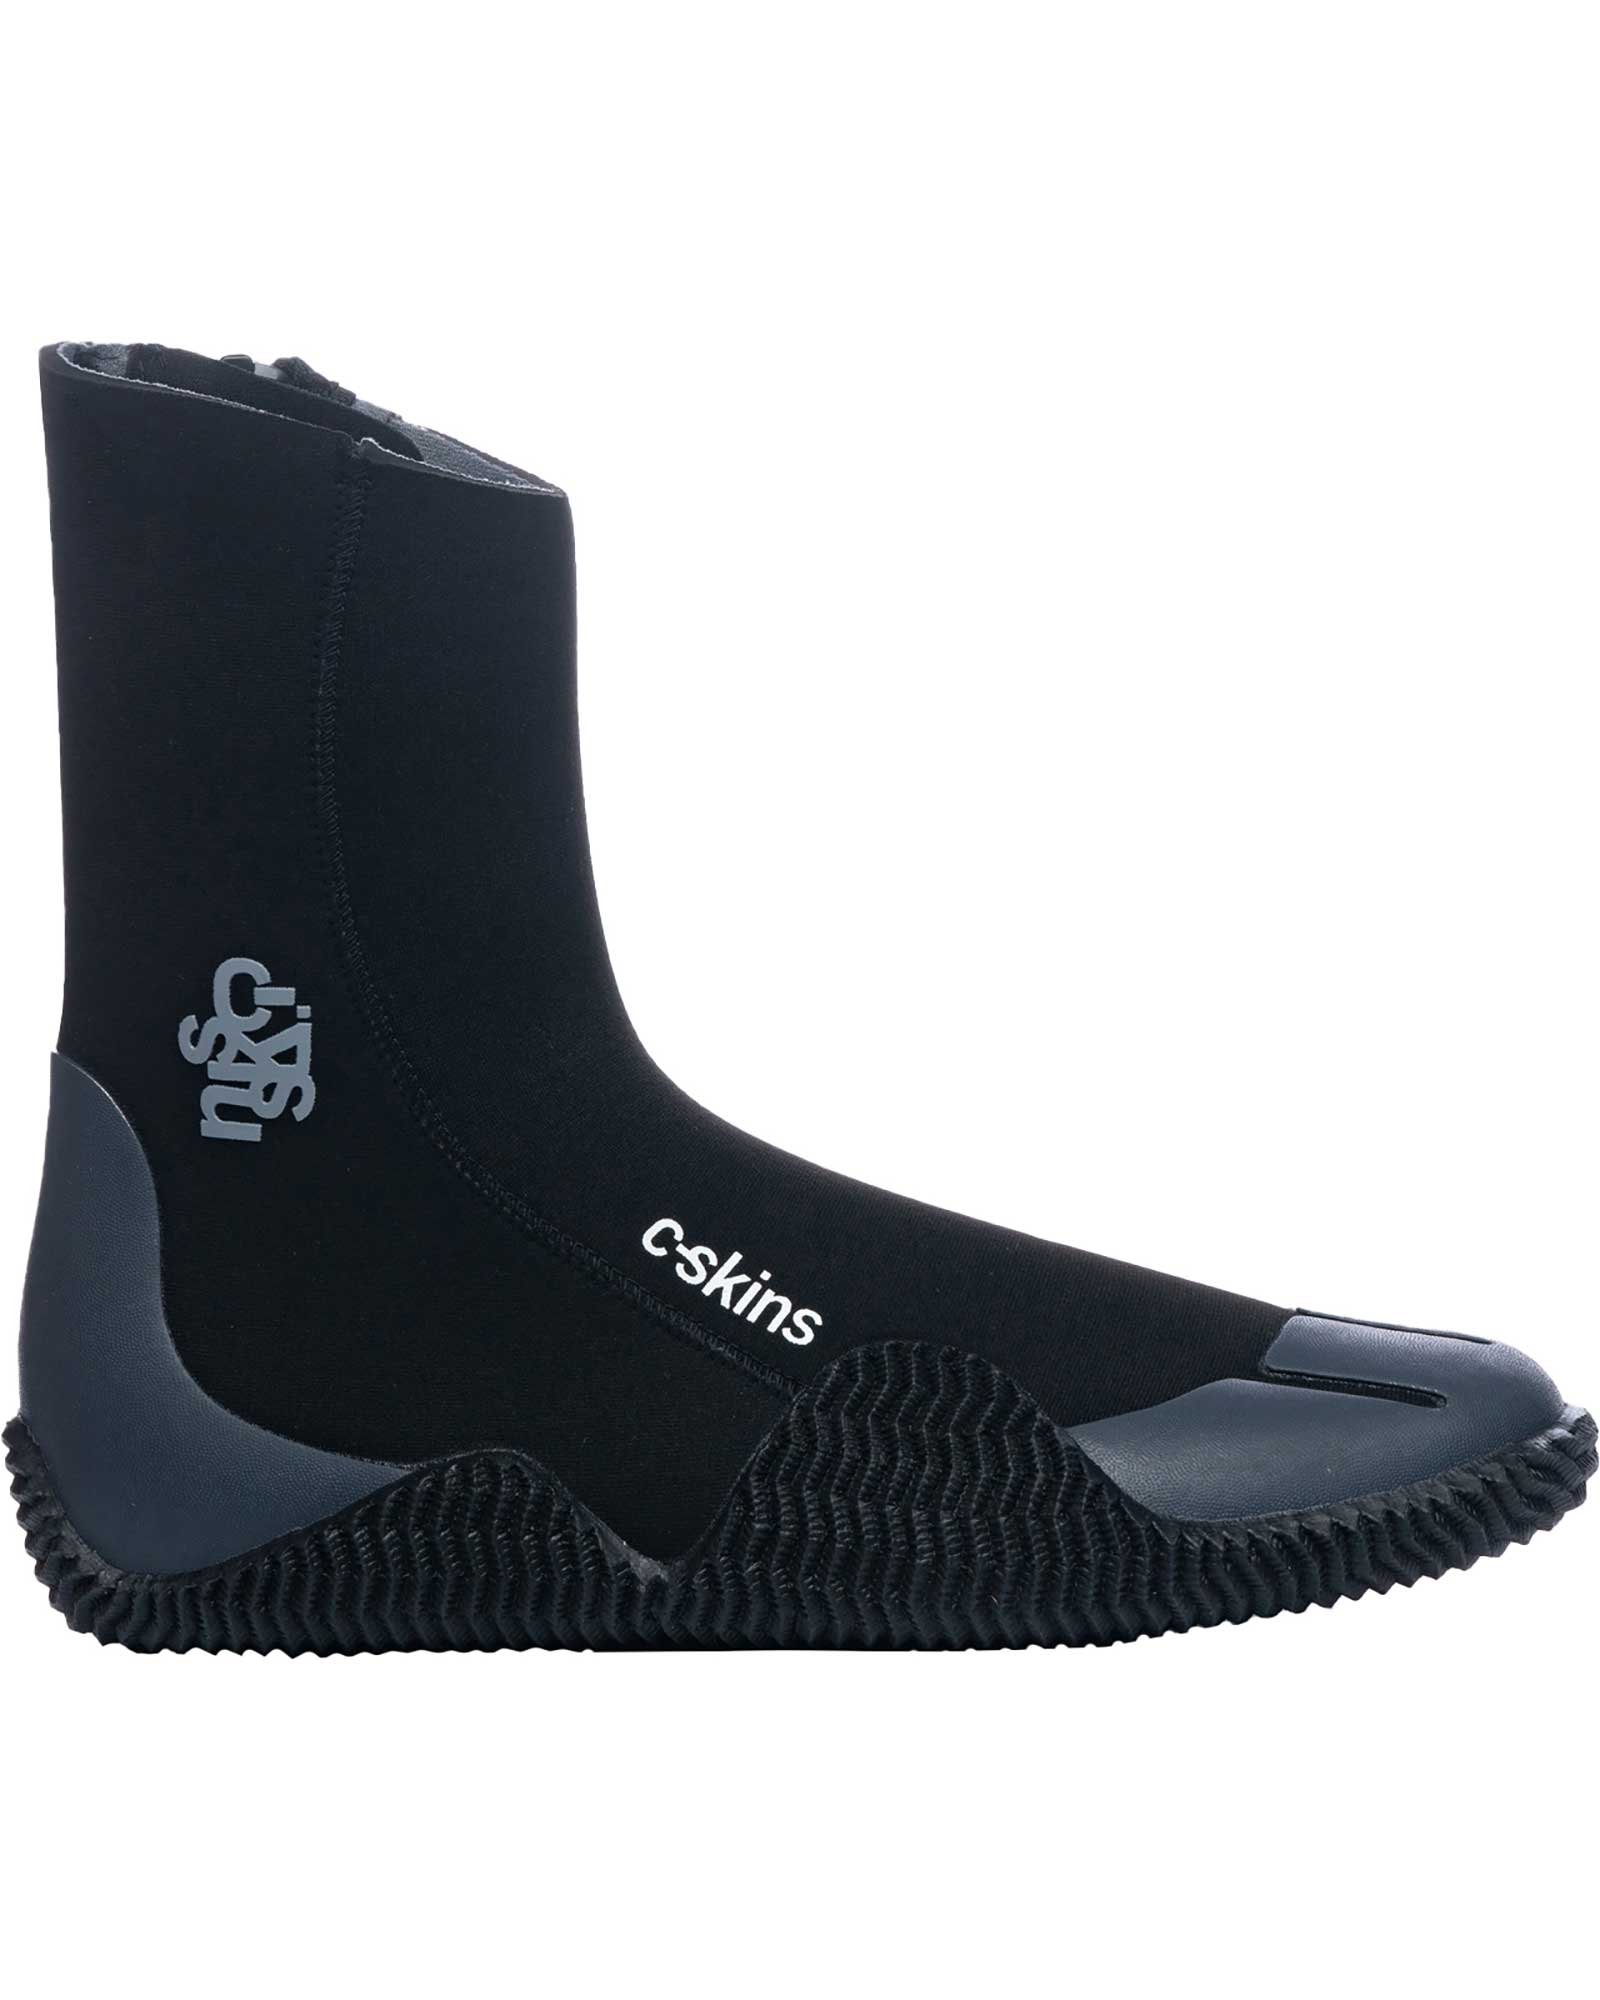 C Skins Legend 5mm Zipped Boots - Black/Charcoal UK 8